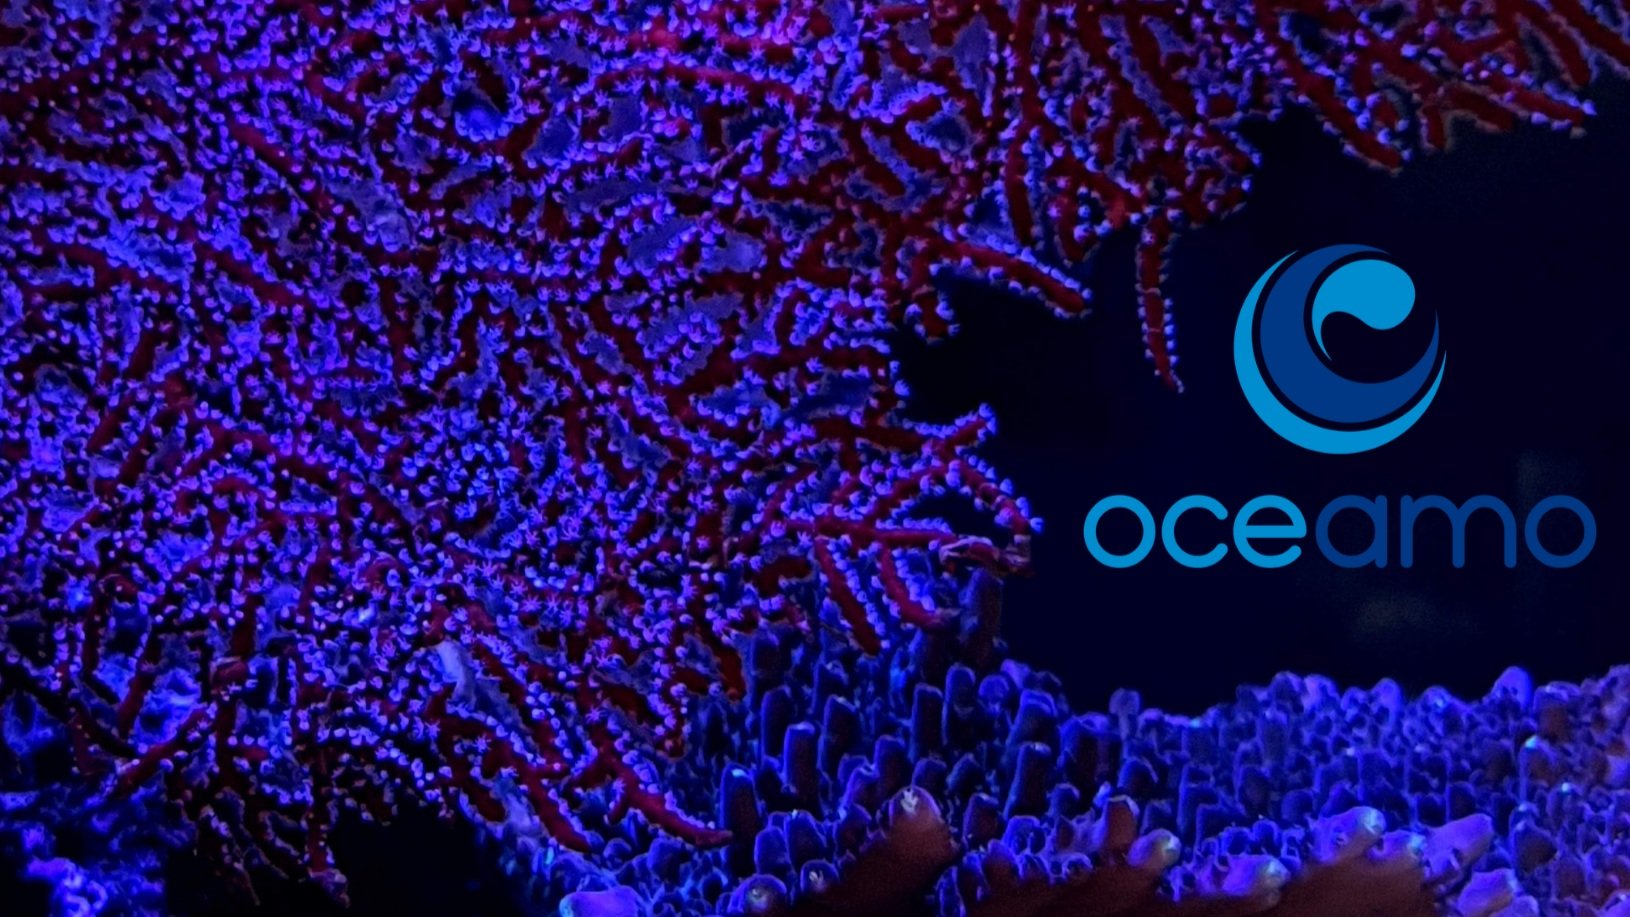 Sea+fan+with+Oceamo+logo.jpg